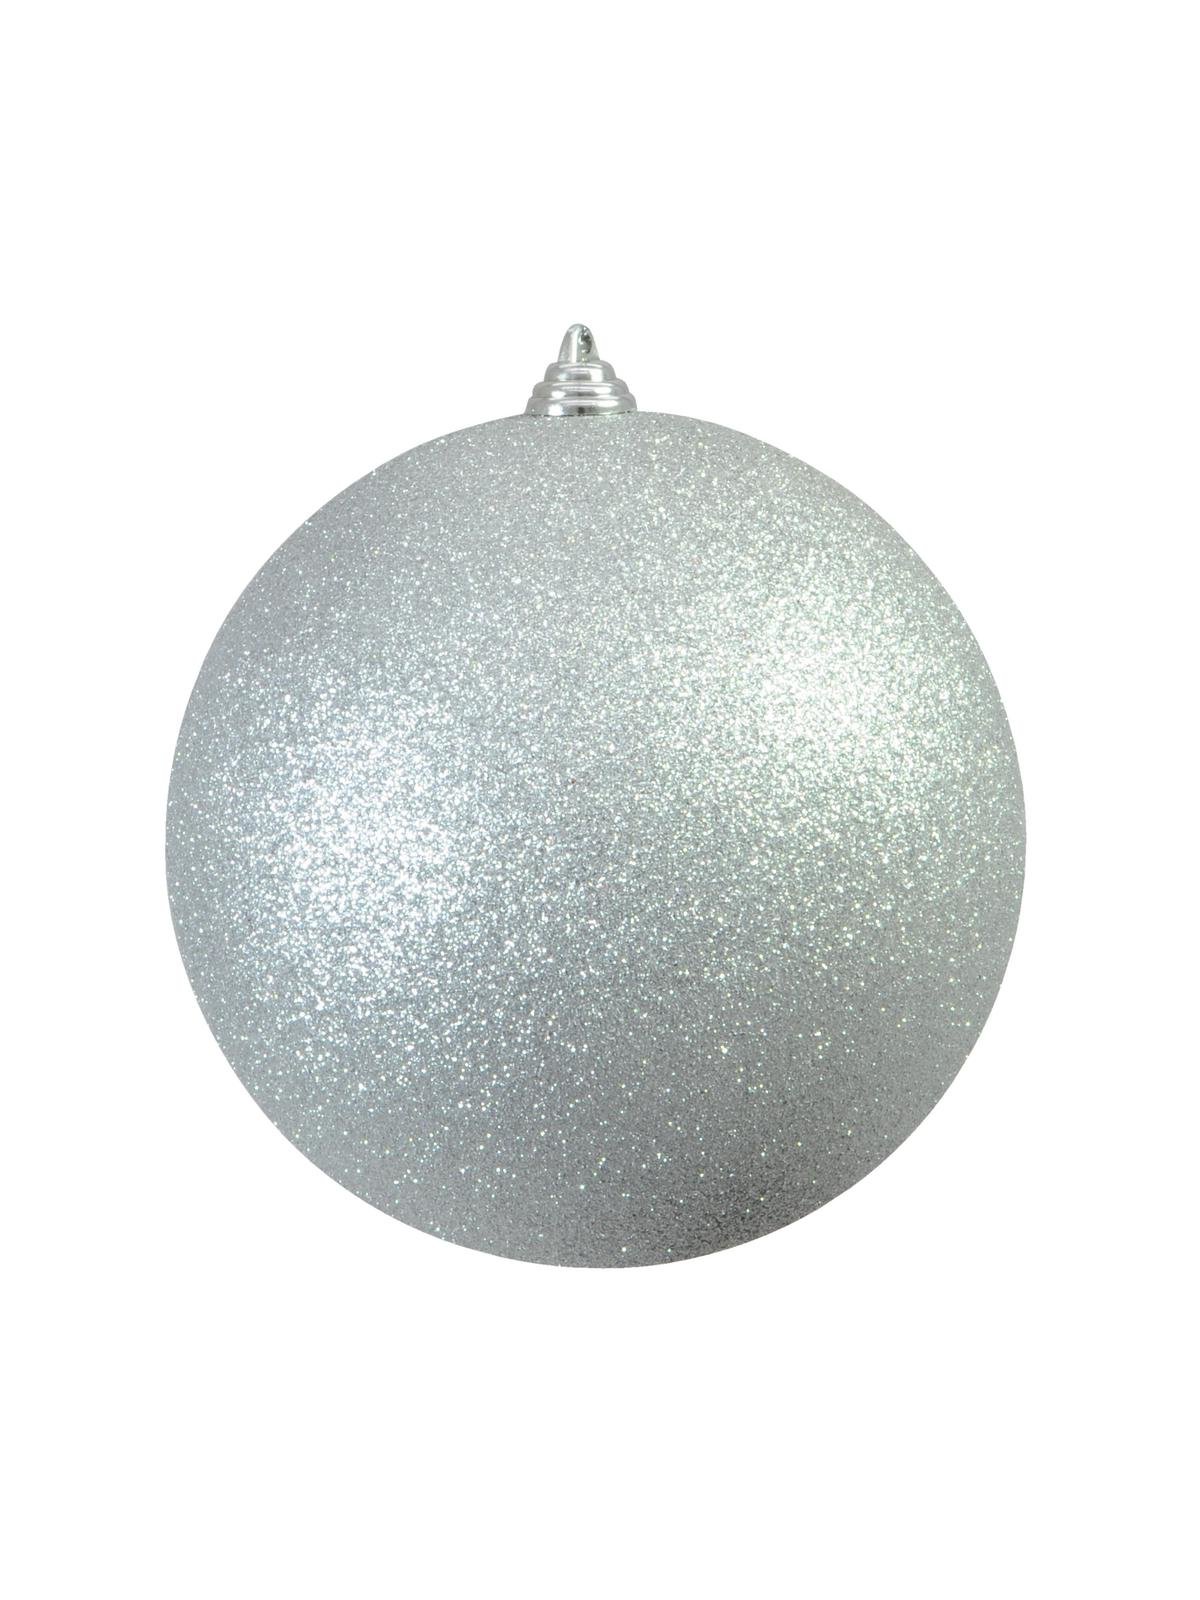 Vánoční ozdoba 20cm, stříbrná koule s glitry